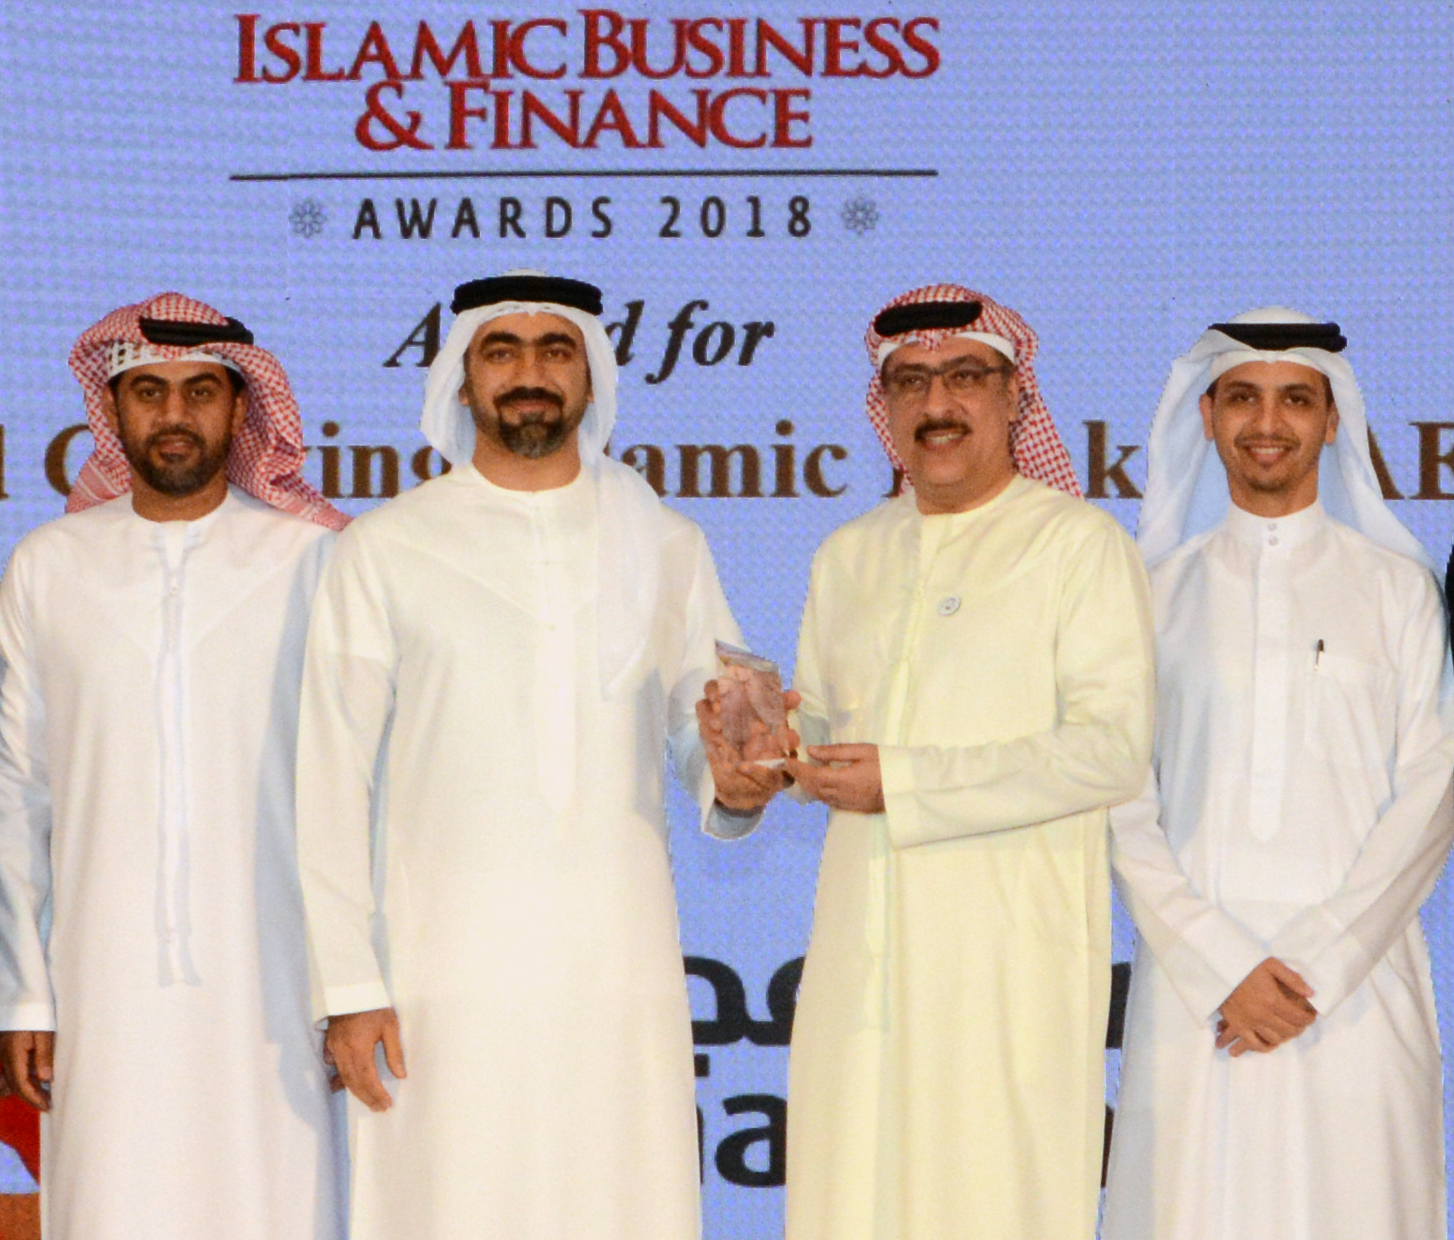 ‫مصرف عجمان يحصد جائزة المصرف الأسرع نمواً في دولة الإمارات العربية المتحدة لعام 2018‬